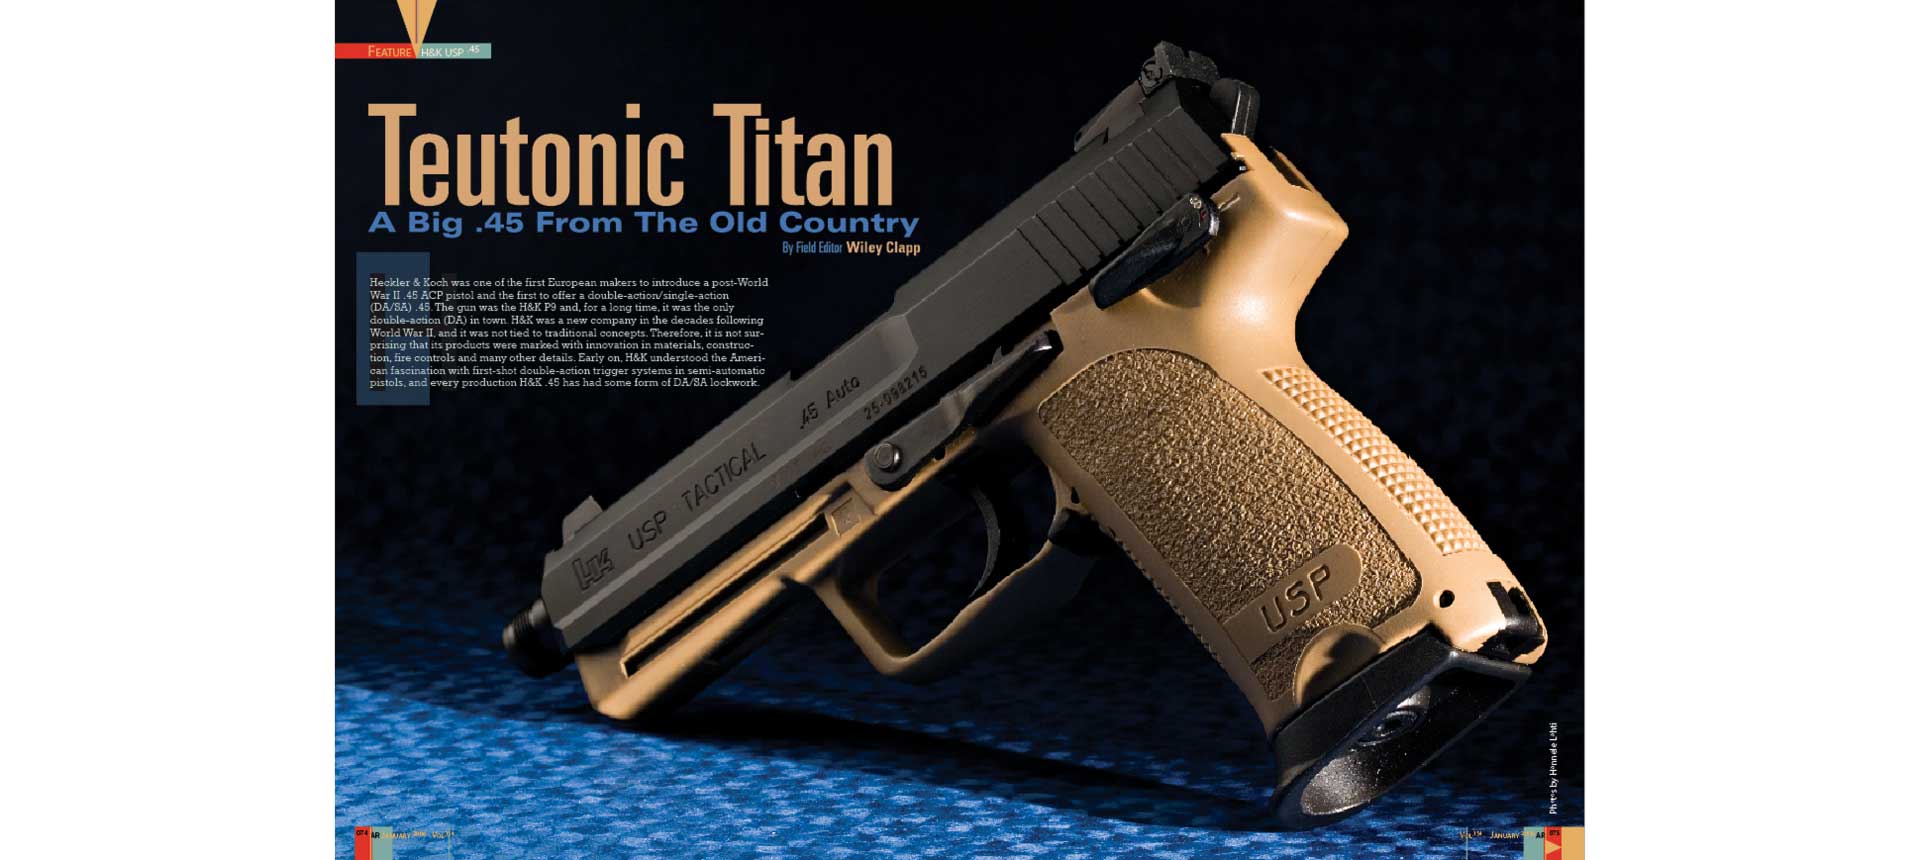 H&K USP Tactical left-side view FDE frame pistol handgun magazine layout centerfold text